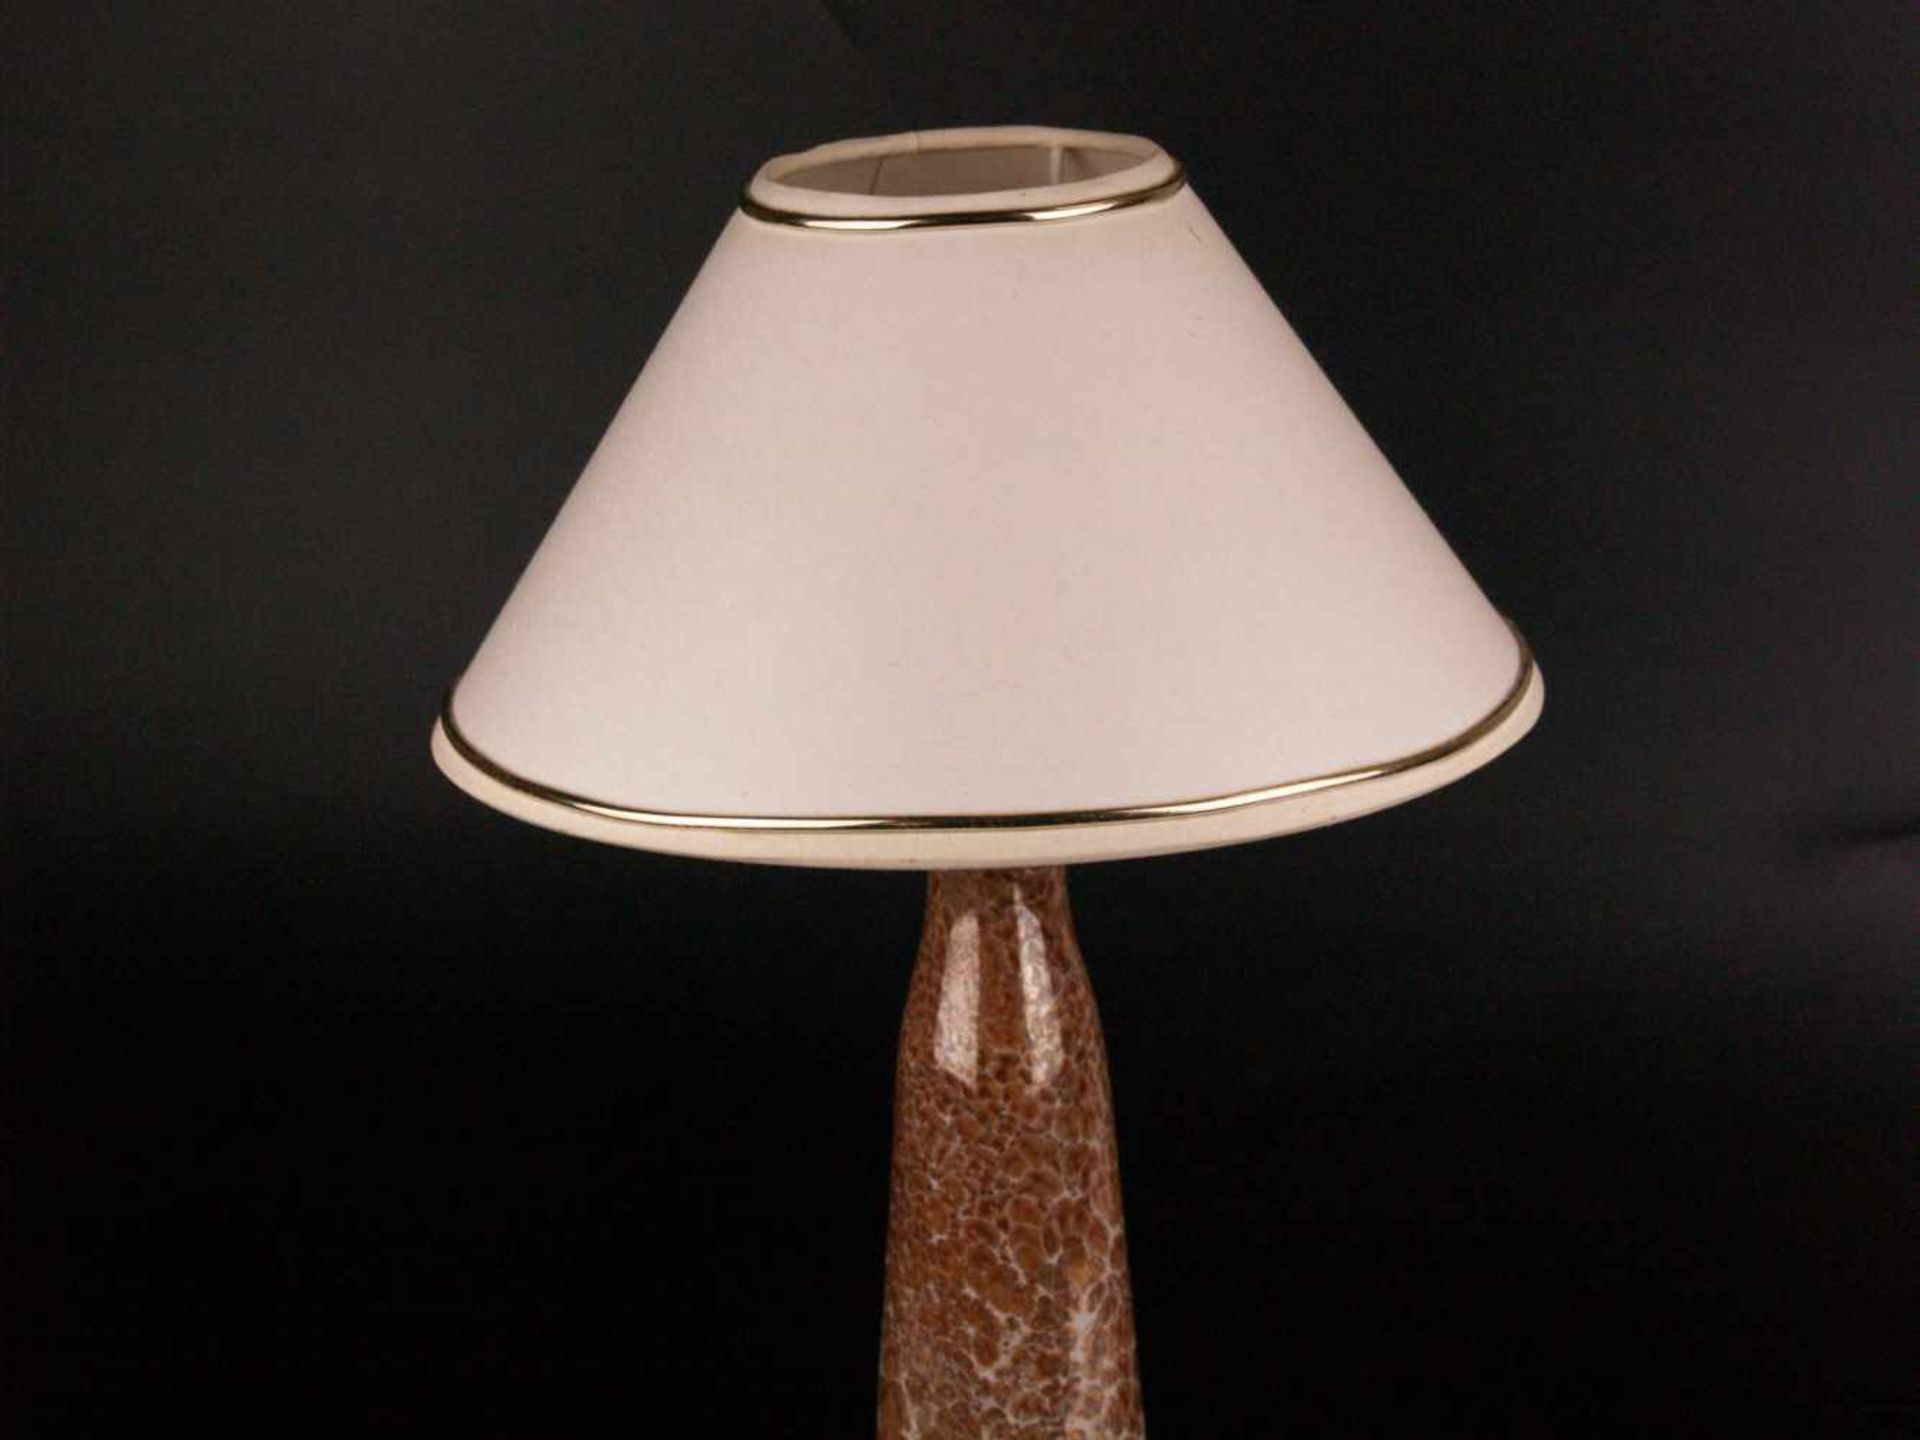 Lampe- Porzellan/Keramik/Metall, Lampensockel gemarkt Herend, Ungarn, konischer sich nach oben - Bild 2 aus 5